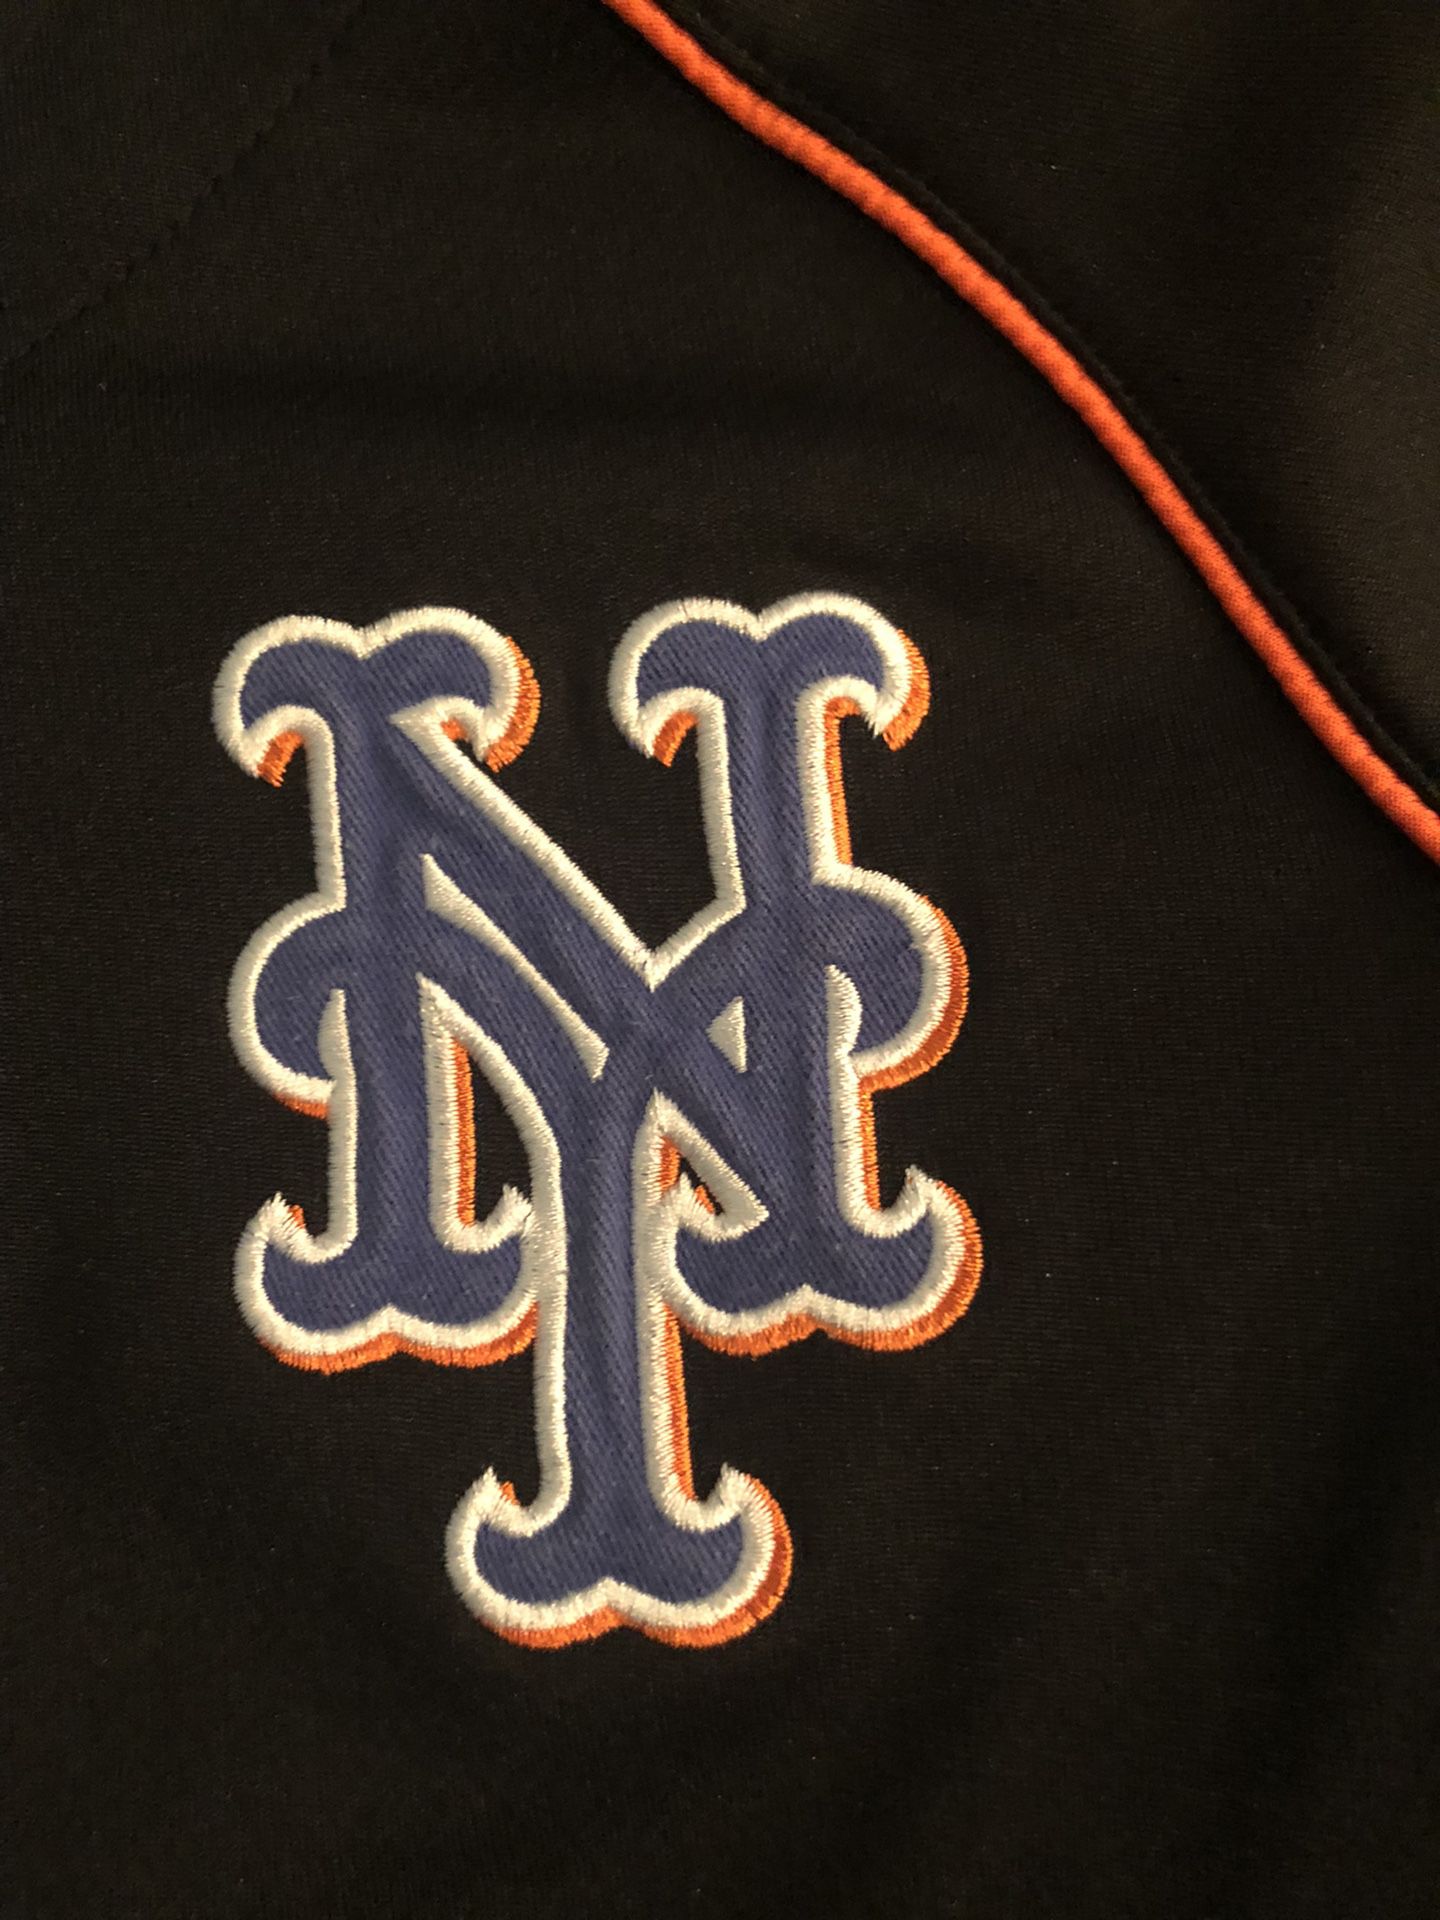 New York Mets Kids Apparel, Kids Mets Clothing, Merchandise